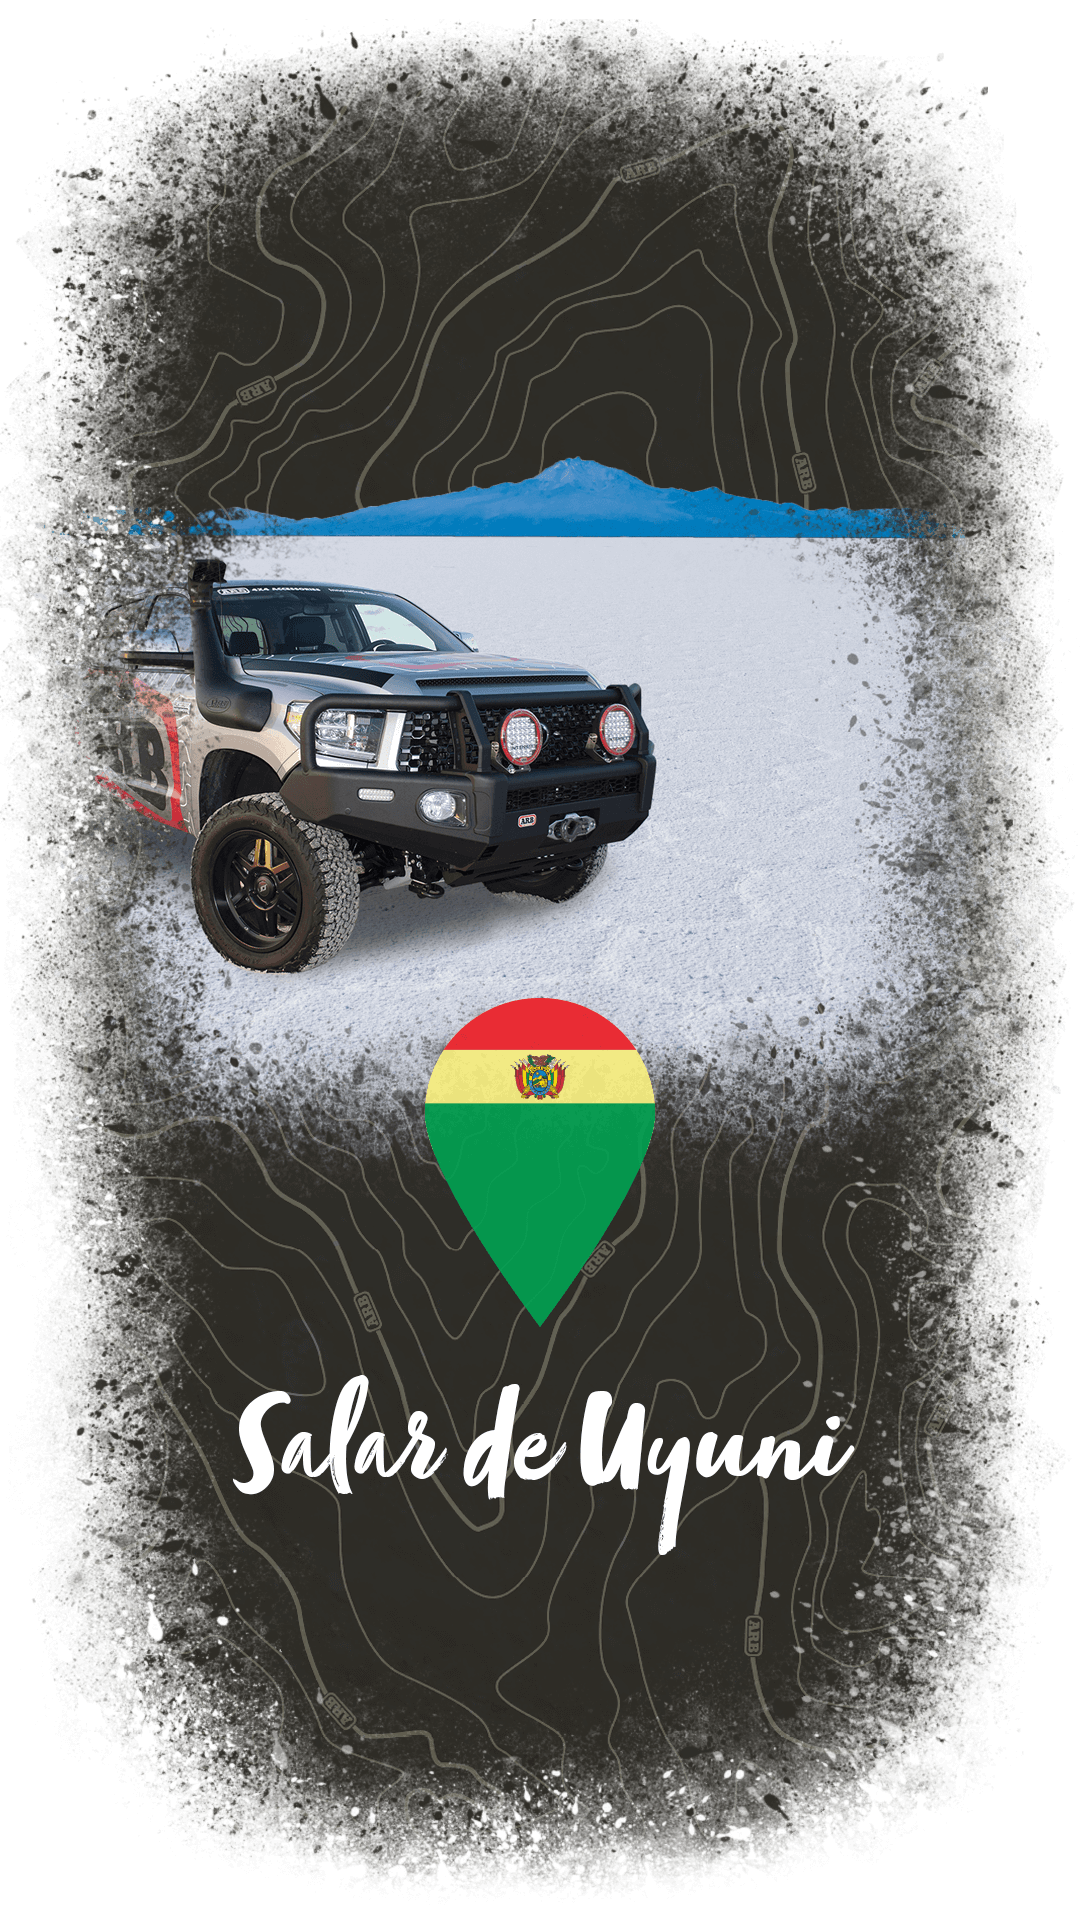 Salar de Uyuni Bolivia 4x4